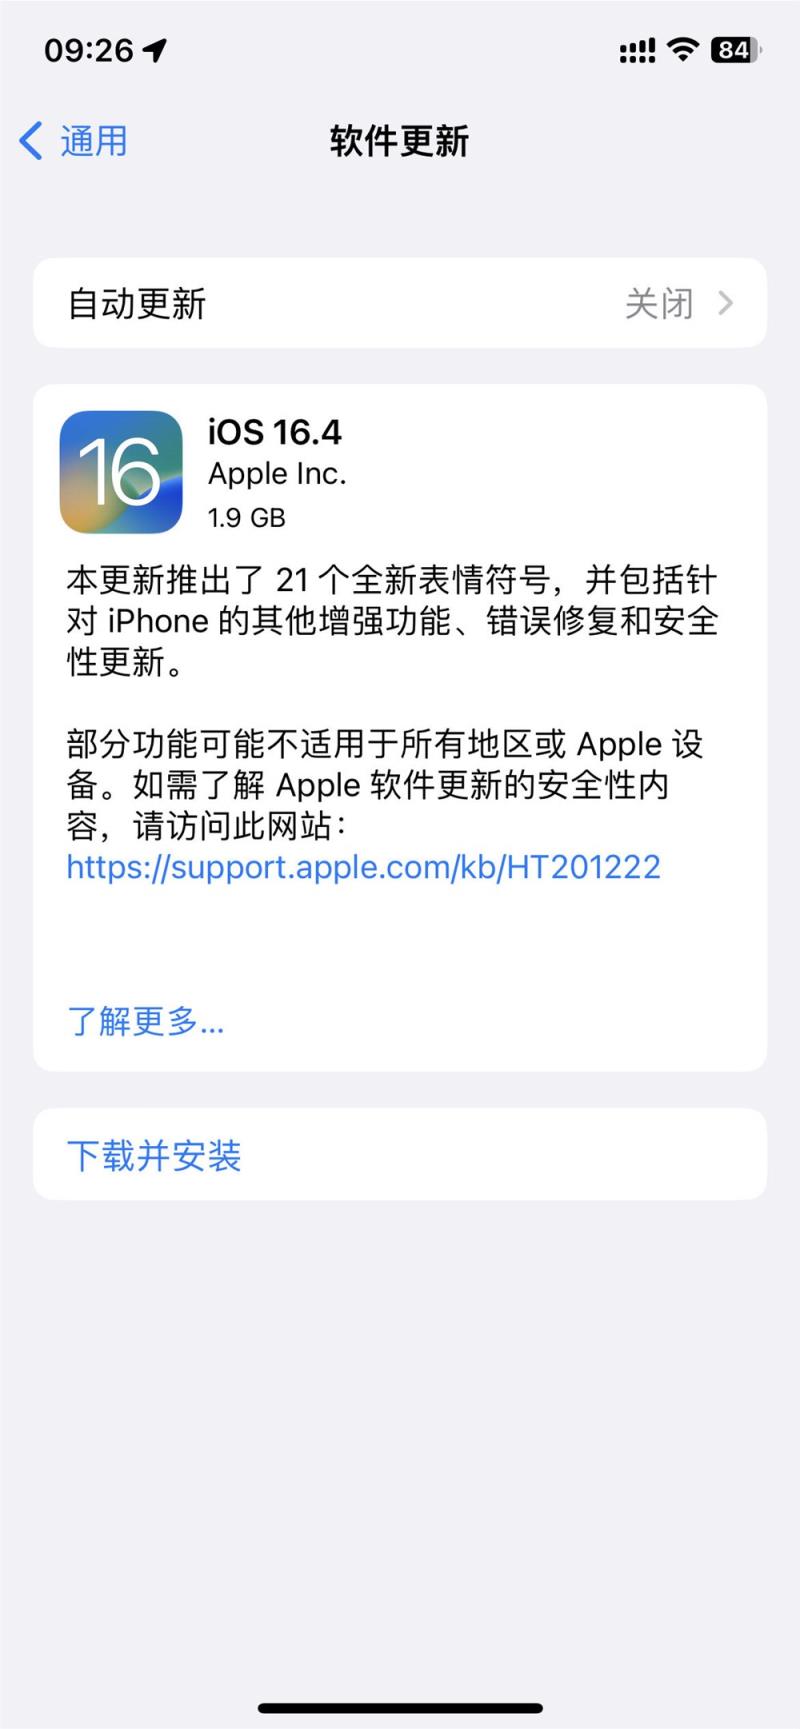 苹果发布 iOS 16.4 正式版系统更新：网页 App 现支持通知功能